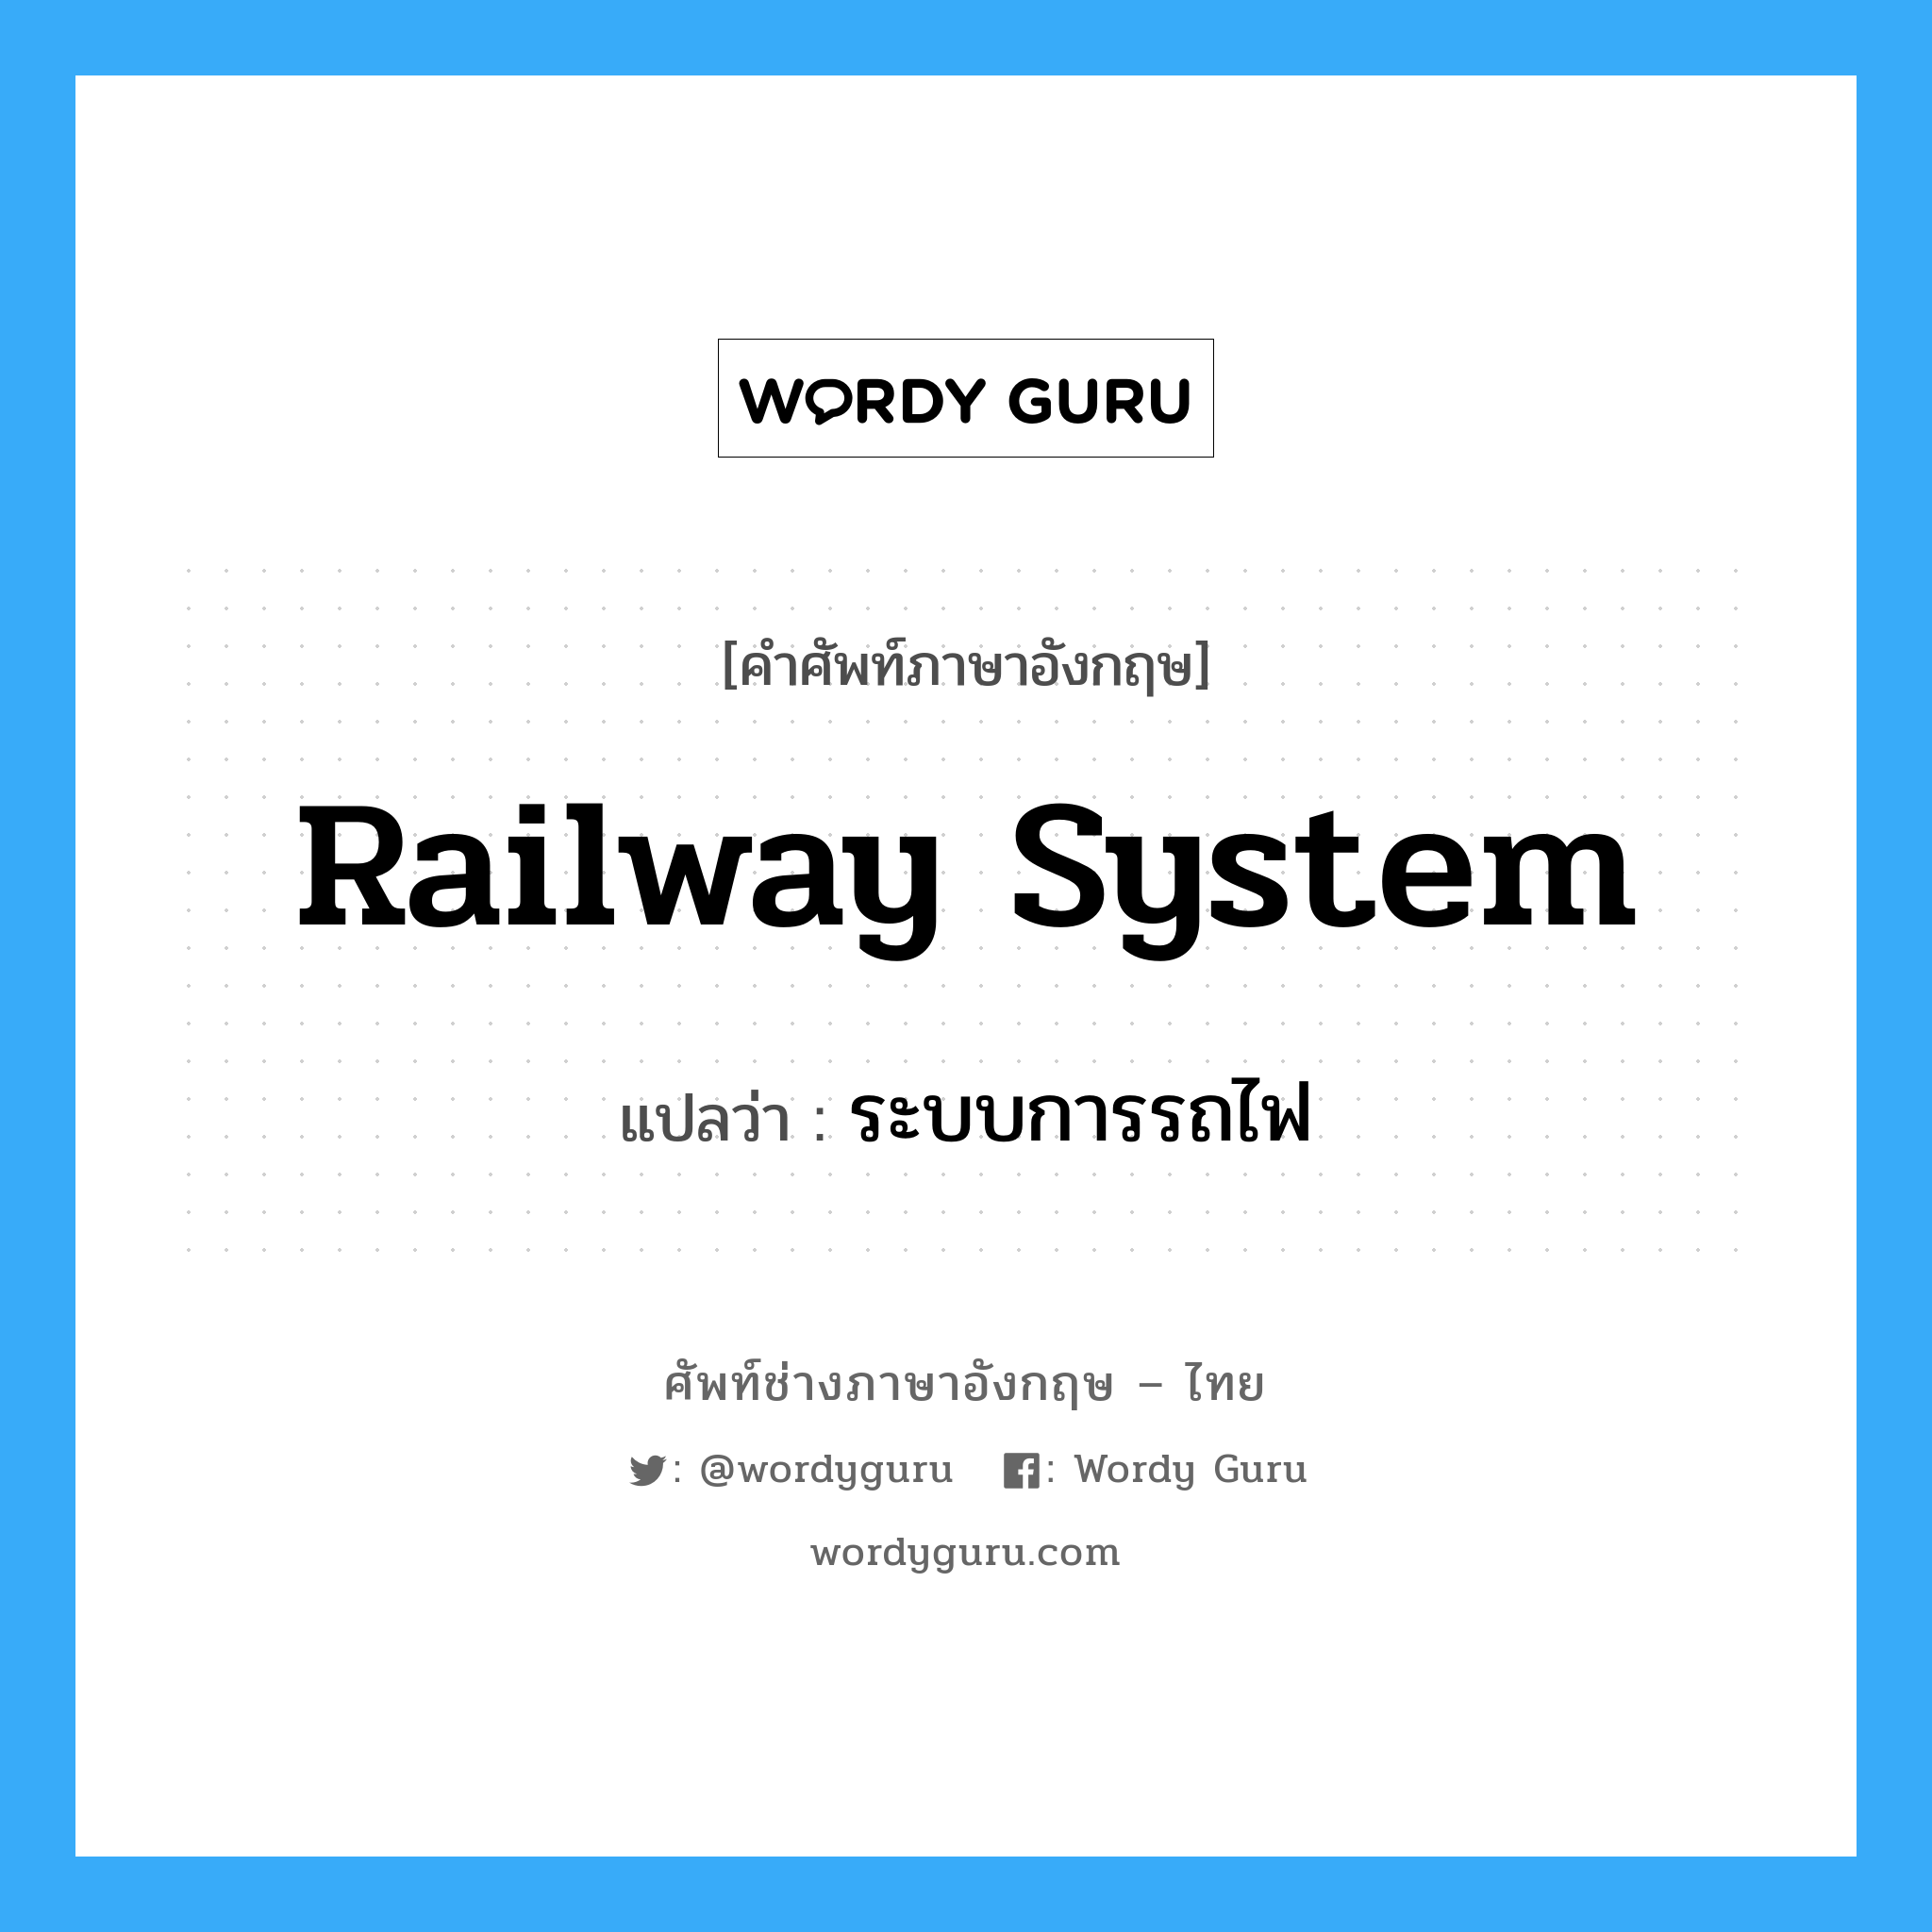 railway system แปลว่า?, คำศัพท์ช่างภาษาอังกฤษ - ไทย railway system คำศัพท์ภาษาอังกฤษ railway system แปลว่า ระบบการรถไฟ